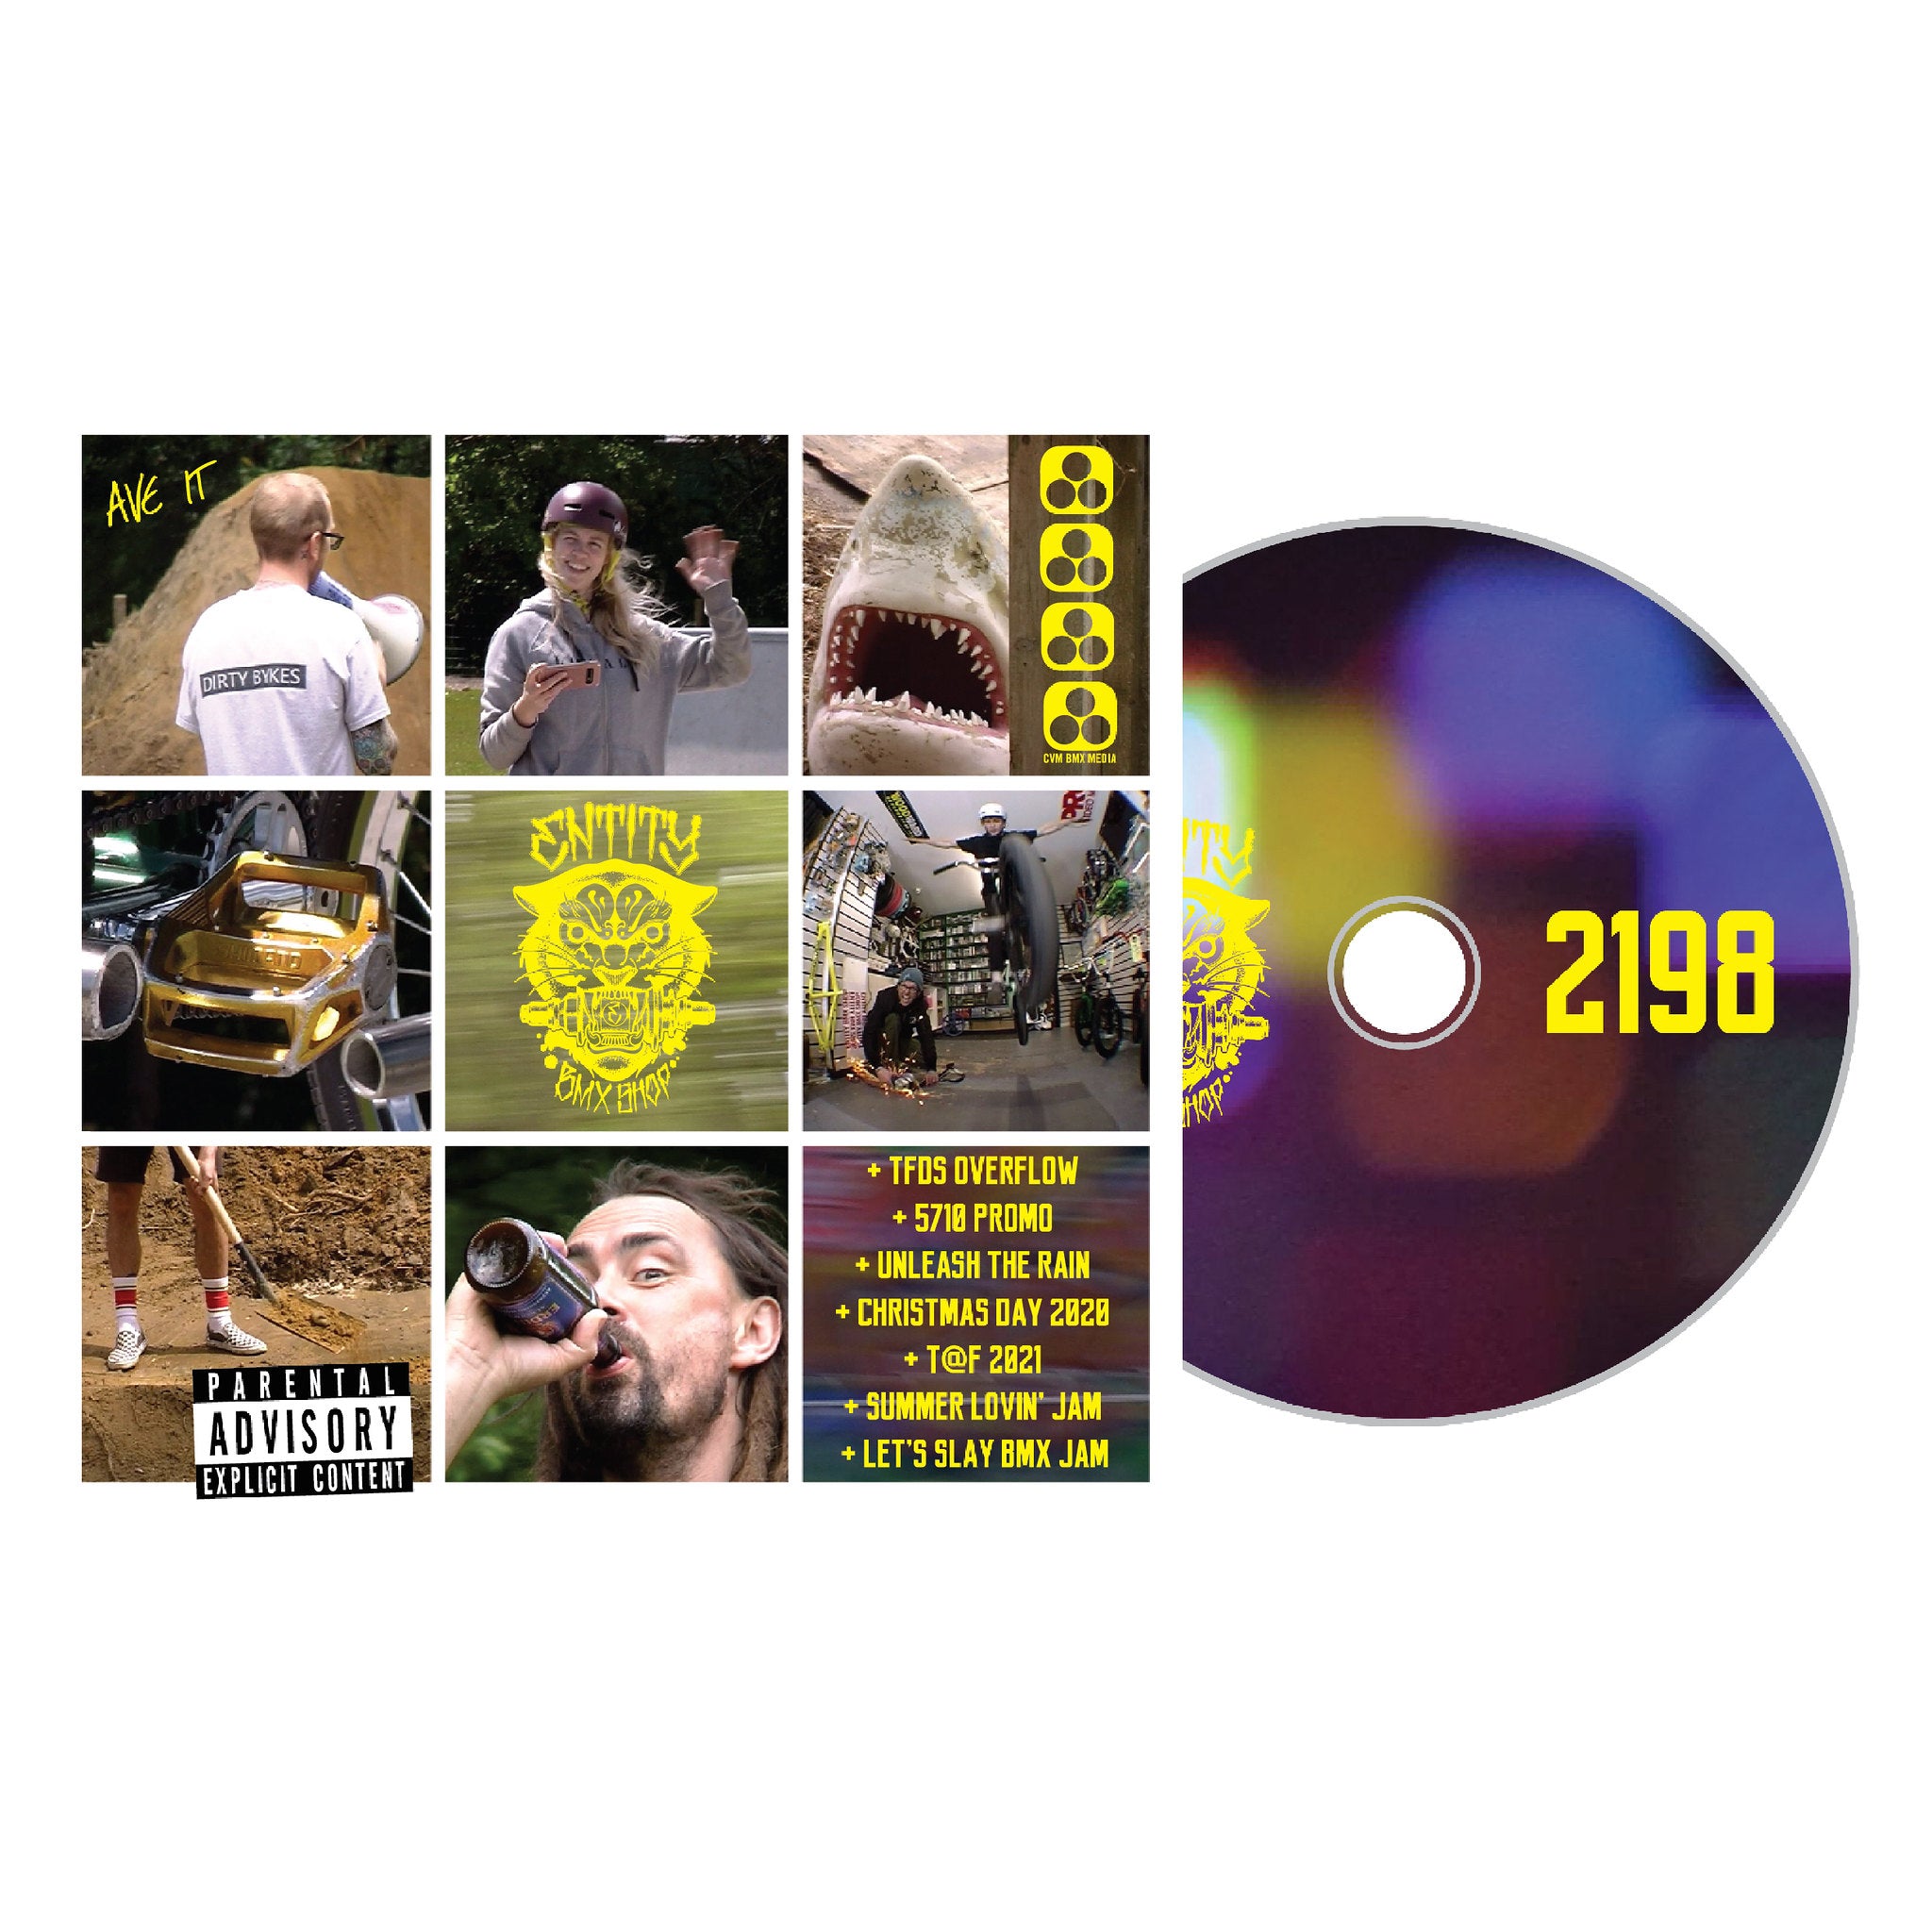 Entity BMX Shop 2198 DVD